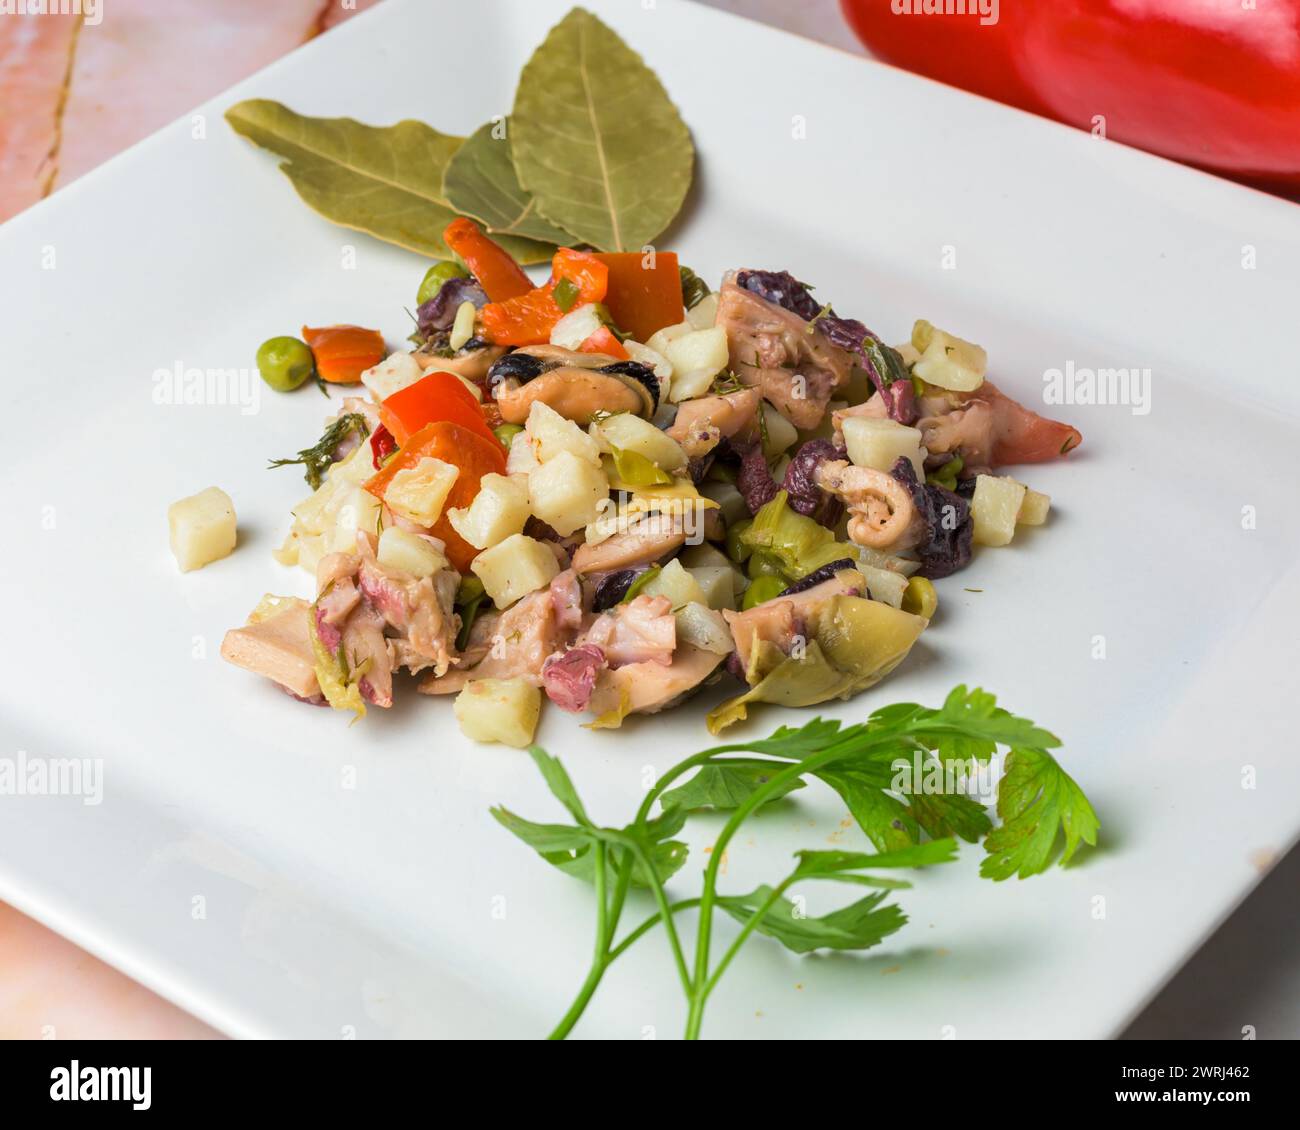 Ein gut präsentierter Kraken-Salat mit gewürfeltem Gemüse garniert mit Petersilie auf einem weißen Teller, typisches Essen, typisch mediterrane mallorquinische Küche Stockfoto